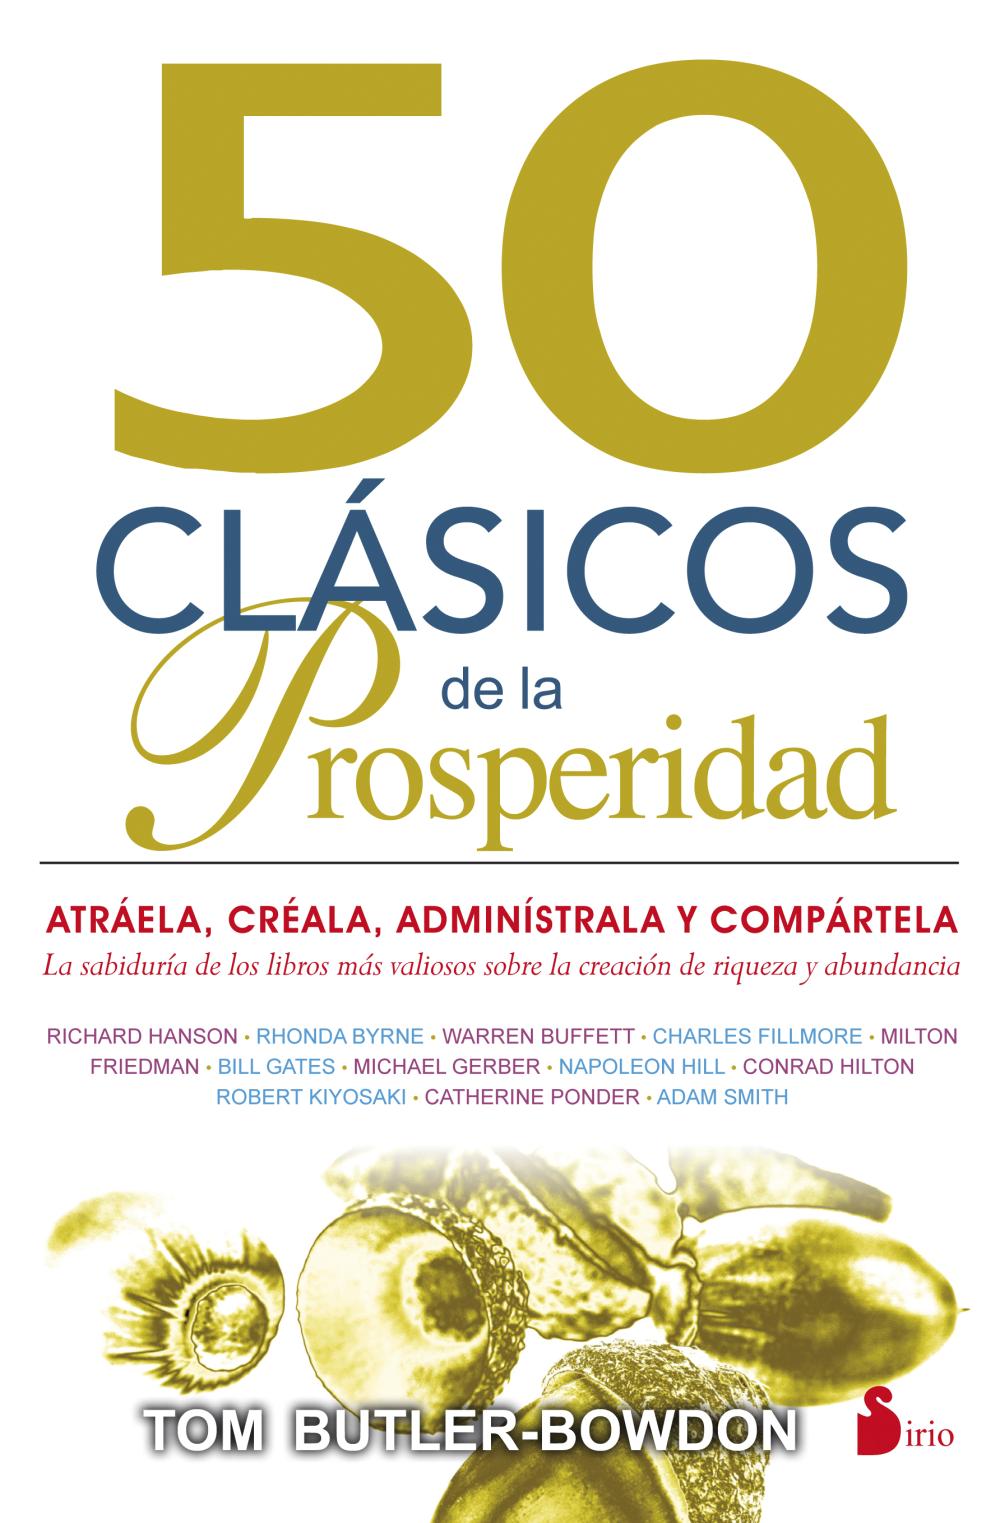 50 clásicos de la prosperidad | Katakrak Liburuak - Librería, Cafetería,  Editorial, Centro de estudios críticos, cooperativa, economía social